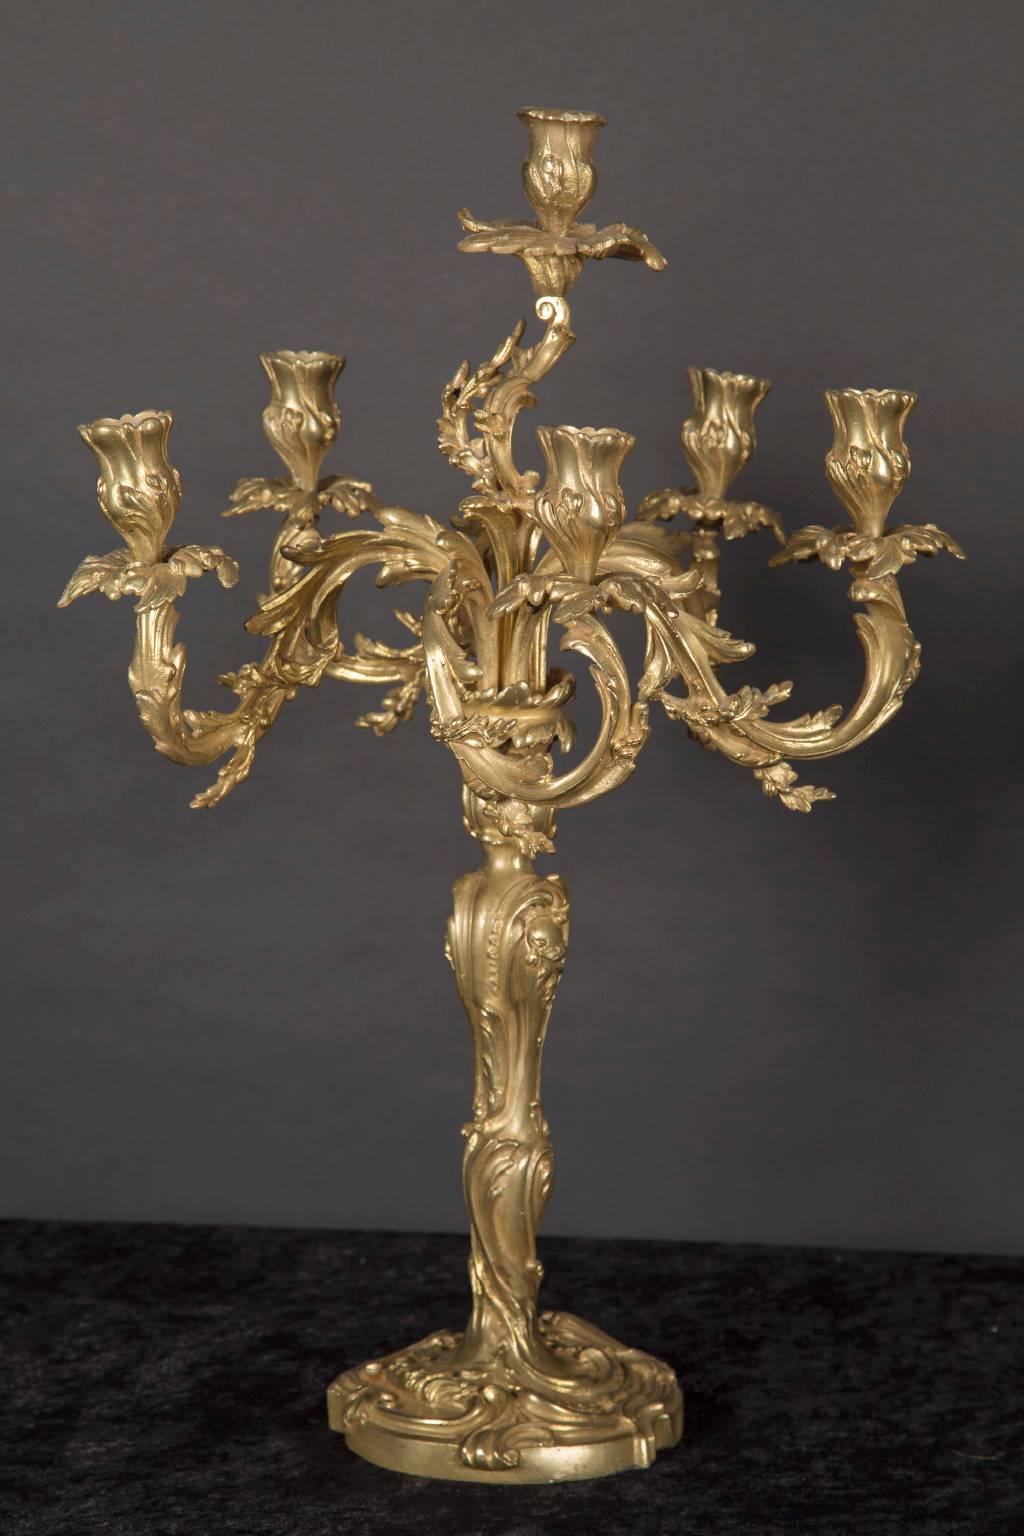 Dieses prächtige Paar bronzener d'oré-Kandelaber zeichnet sich durch geblümte Kerzenschalen, Blattbögen und Arme im klassischen Rokoko-Stil aus. Das antike französische Paar stammt aus dem 19. Jahrhundert und verfügt über einen Mittelstamm und einen